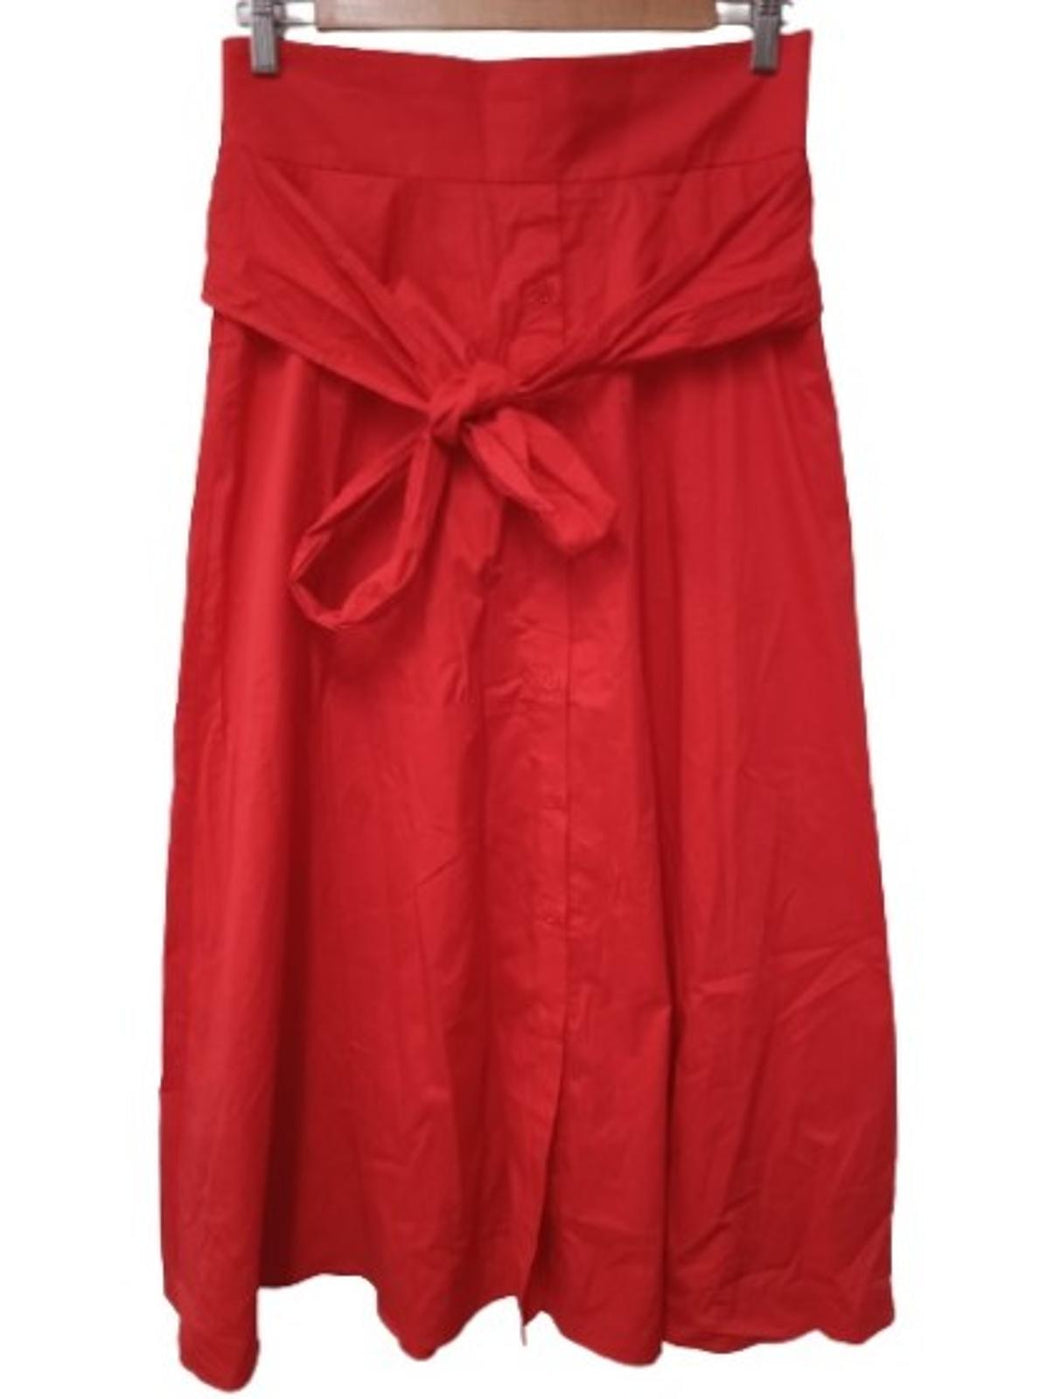 L.K. BENNETT Ladies Aurora Red Cotton Blend Tie-Waist Darly Midi Skirt UK12 NEW